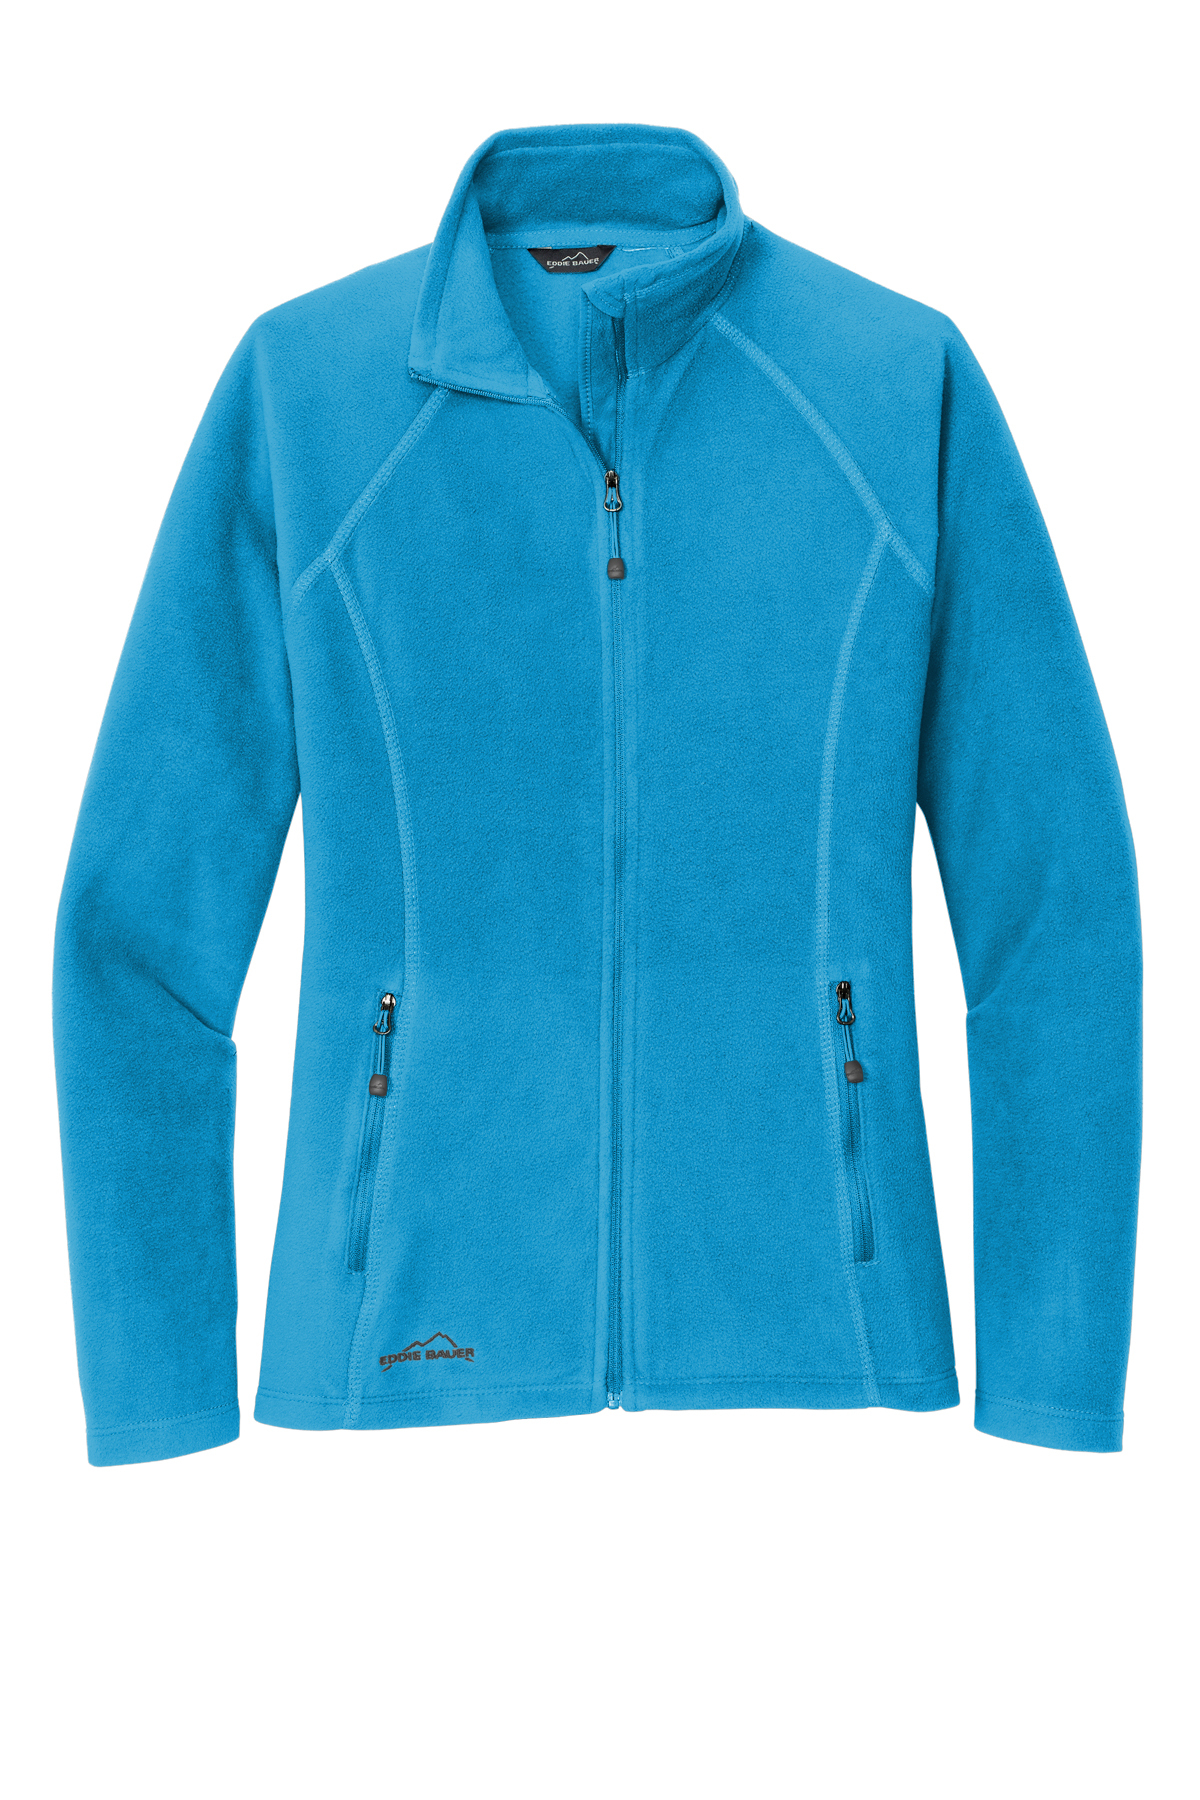 Eddie Bauer Ladies Full-Zip Microfleece Jacket, Product